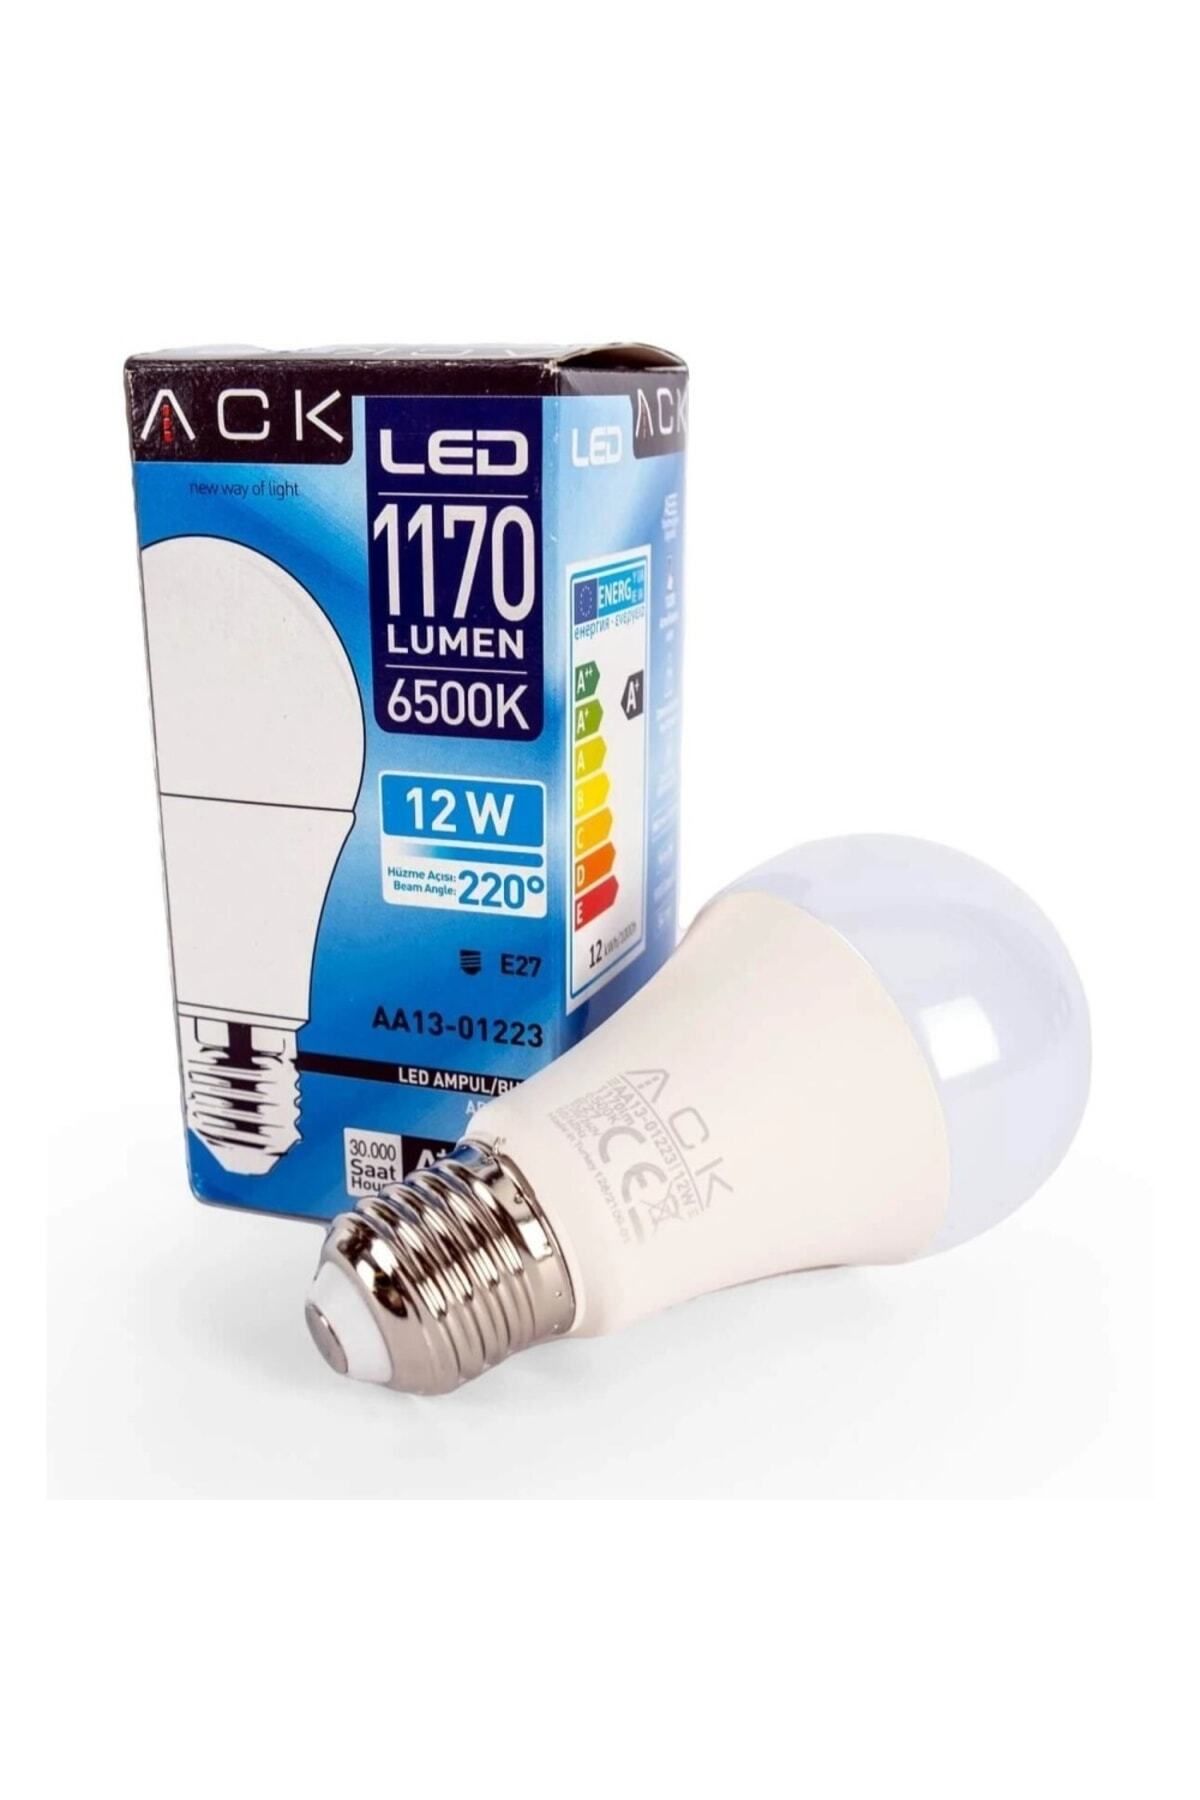 Ack 12 W Led A60 Ampul - Beyaz Işık (6500K) - E27 - Aa13-01223